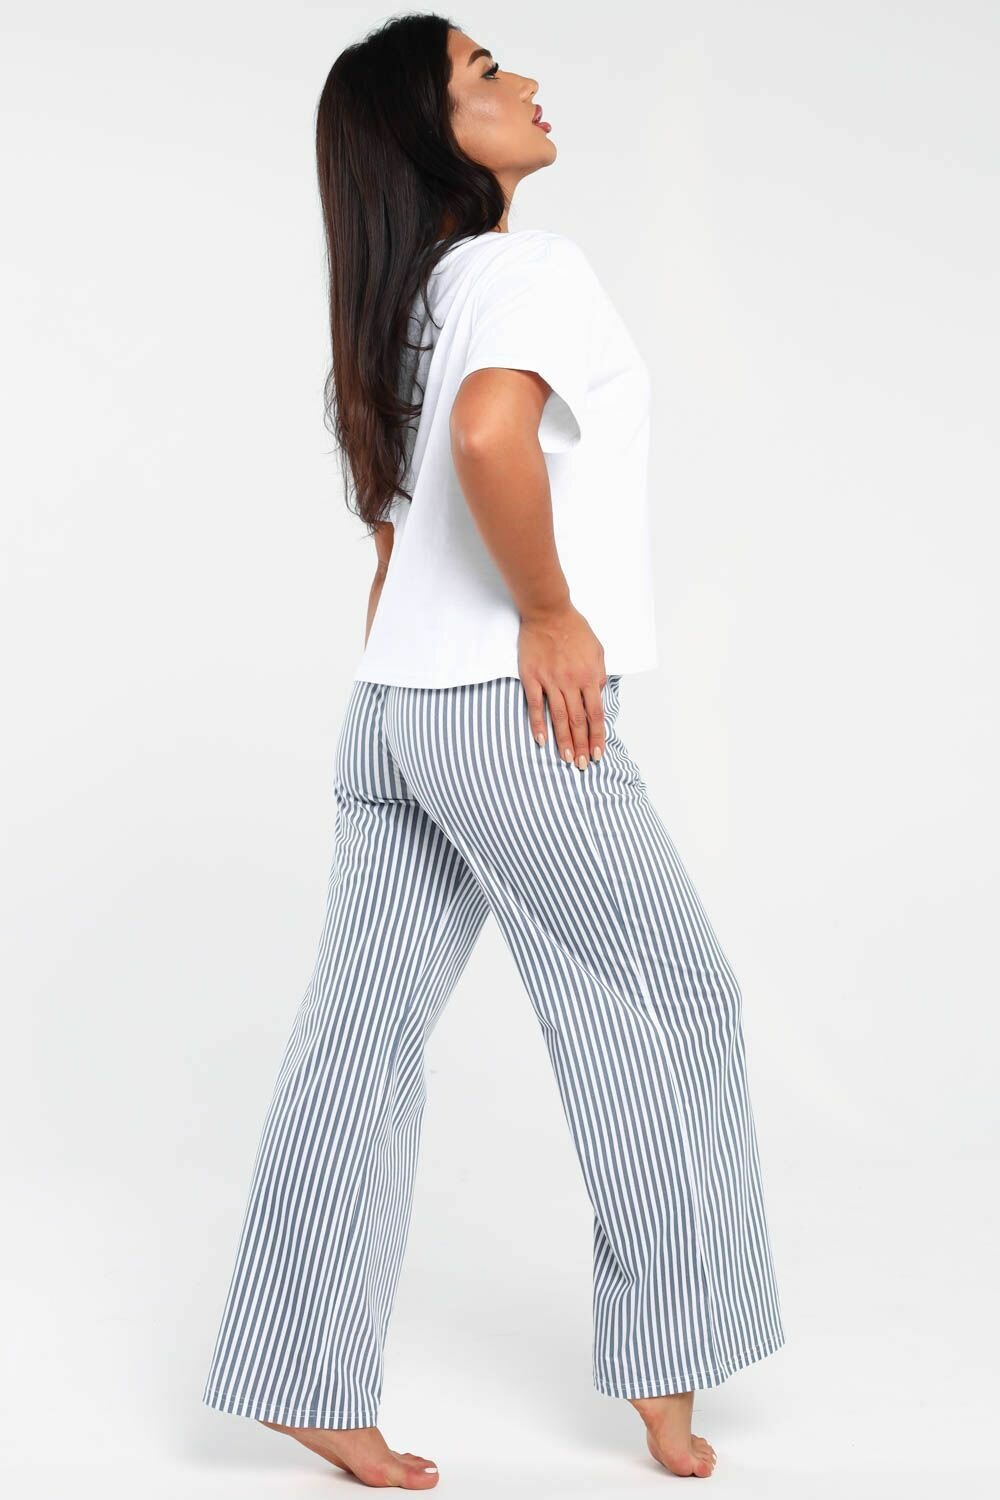 Пижама DIANIDA М-799 размеры 44-54 (44, светло-серый) - фотография № 10